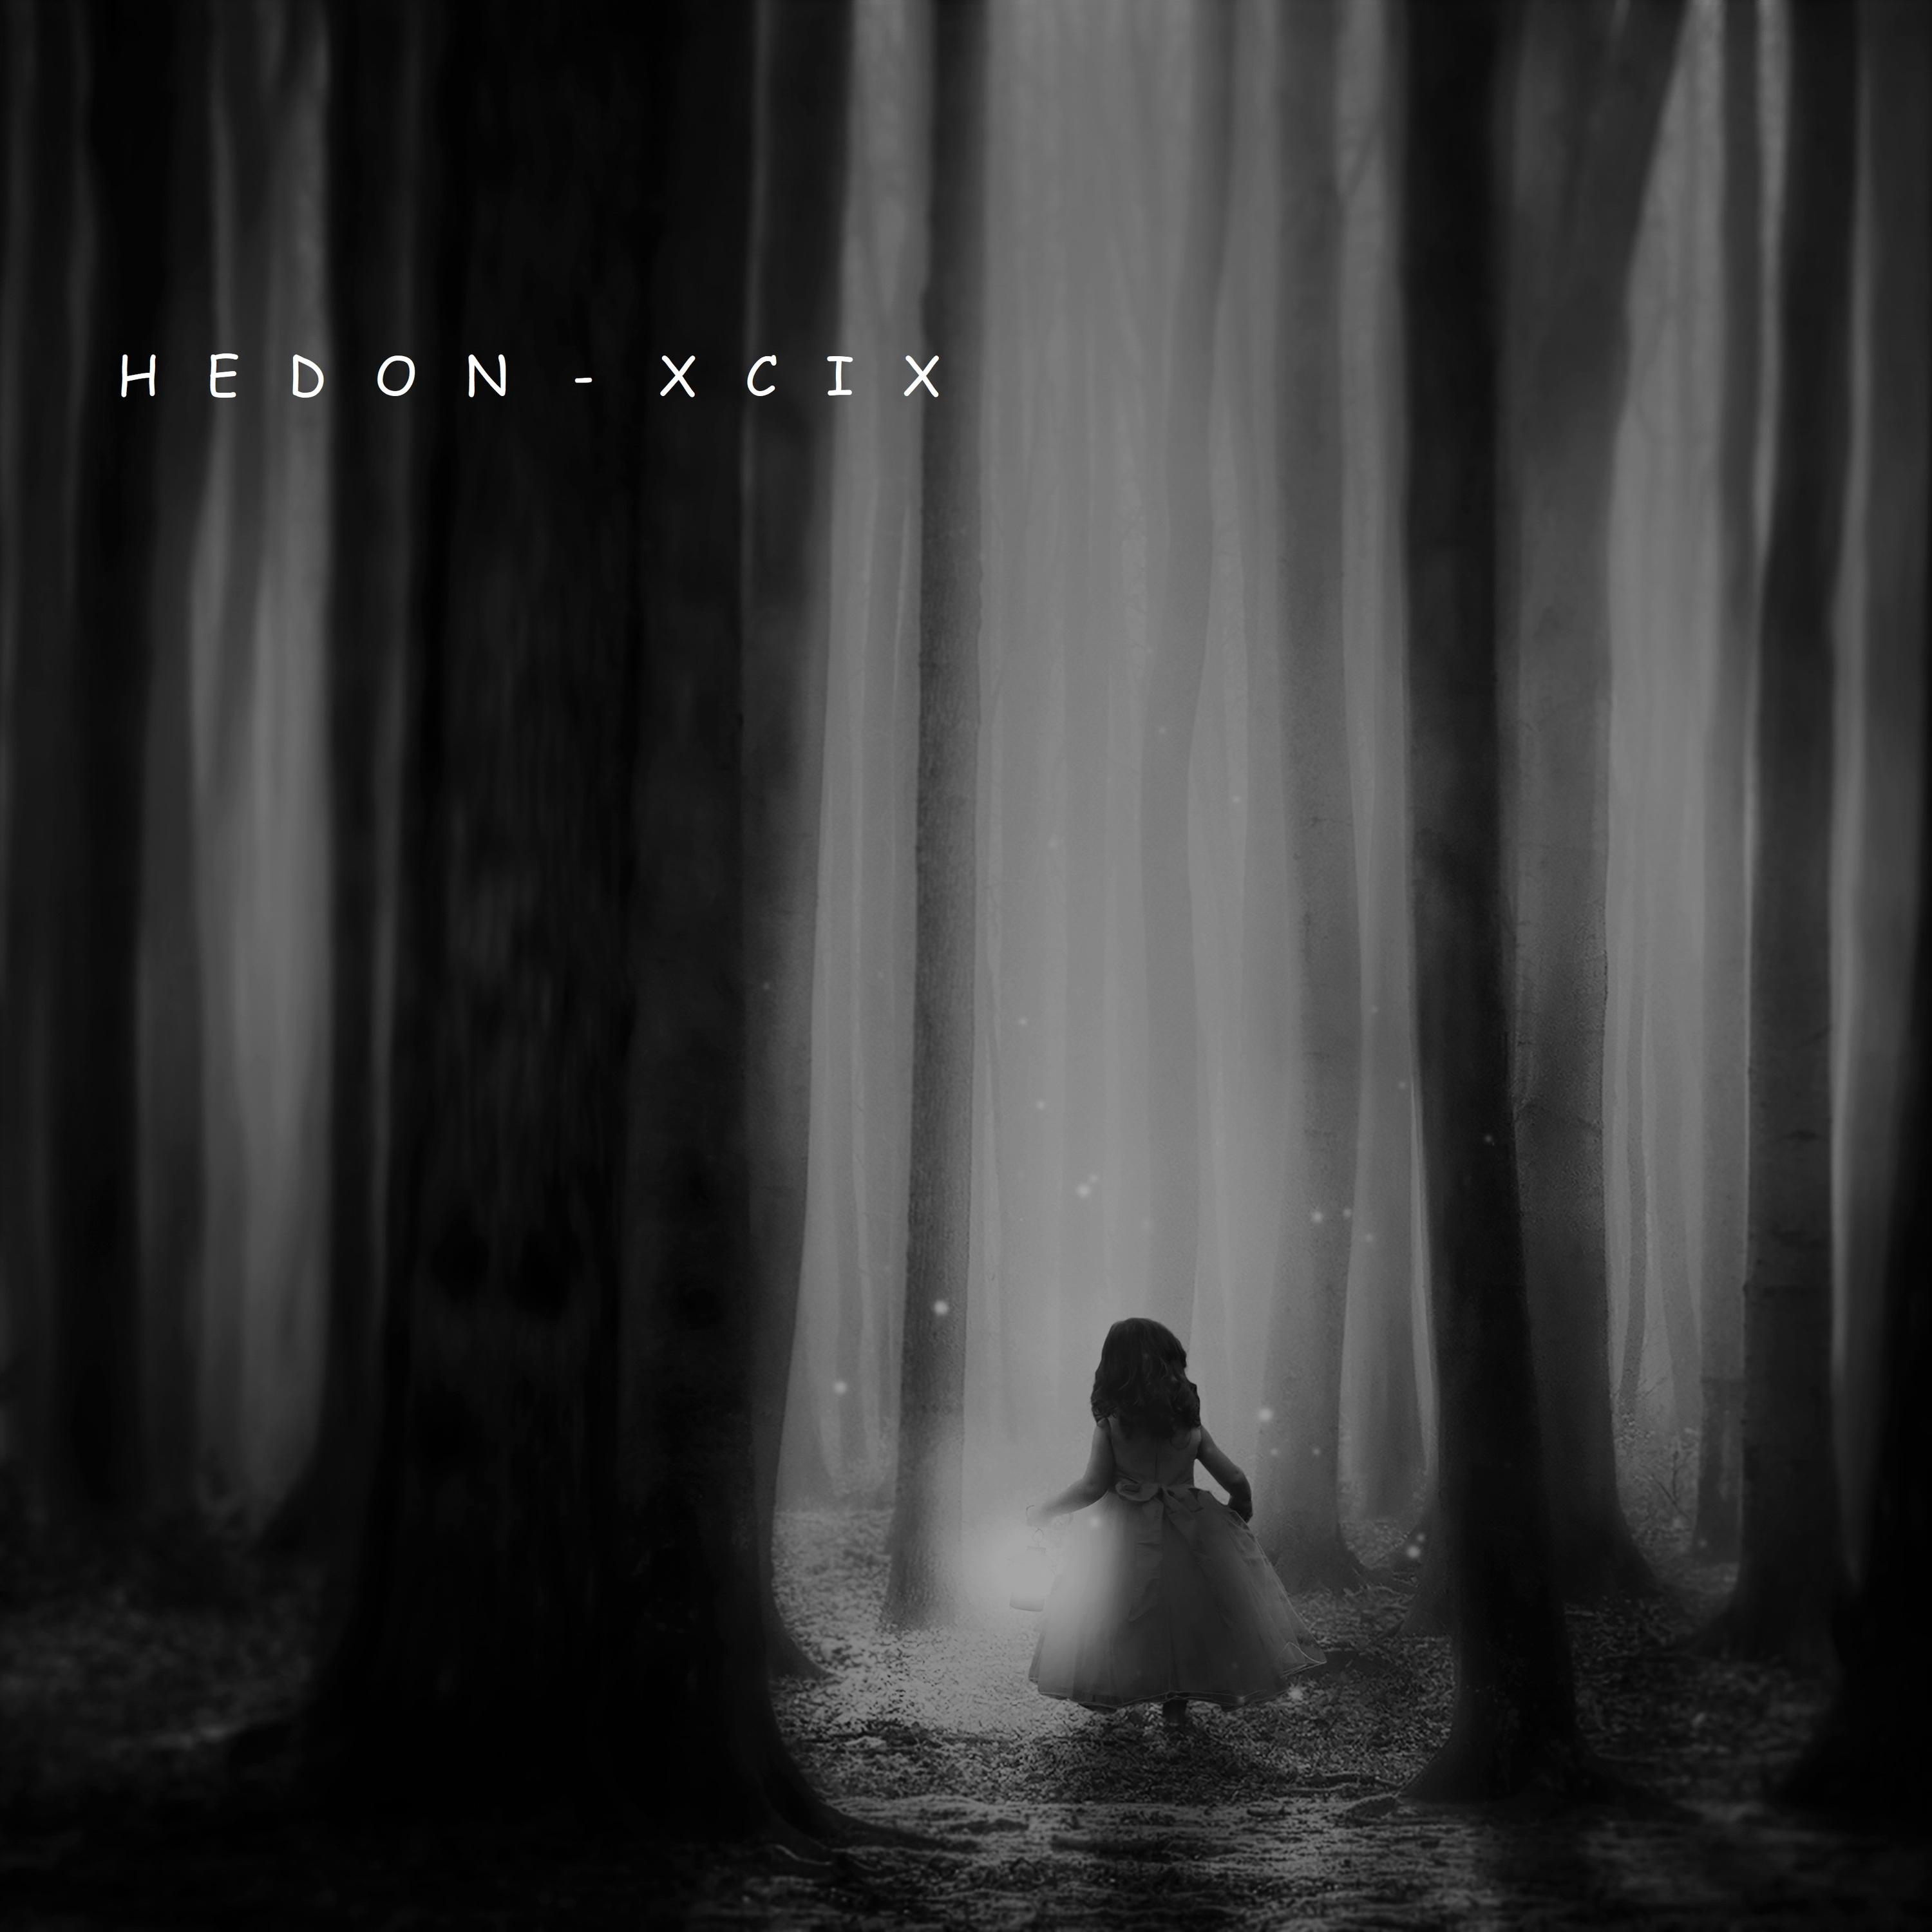 Hedon - XCIX